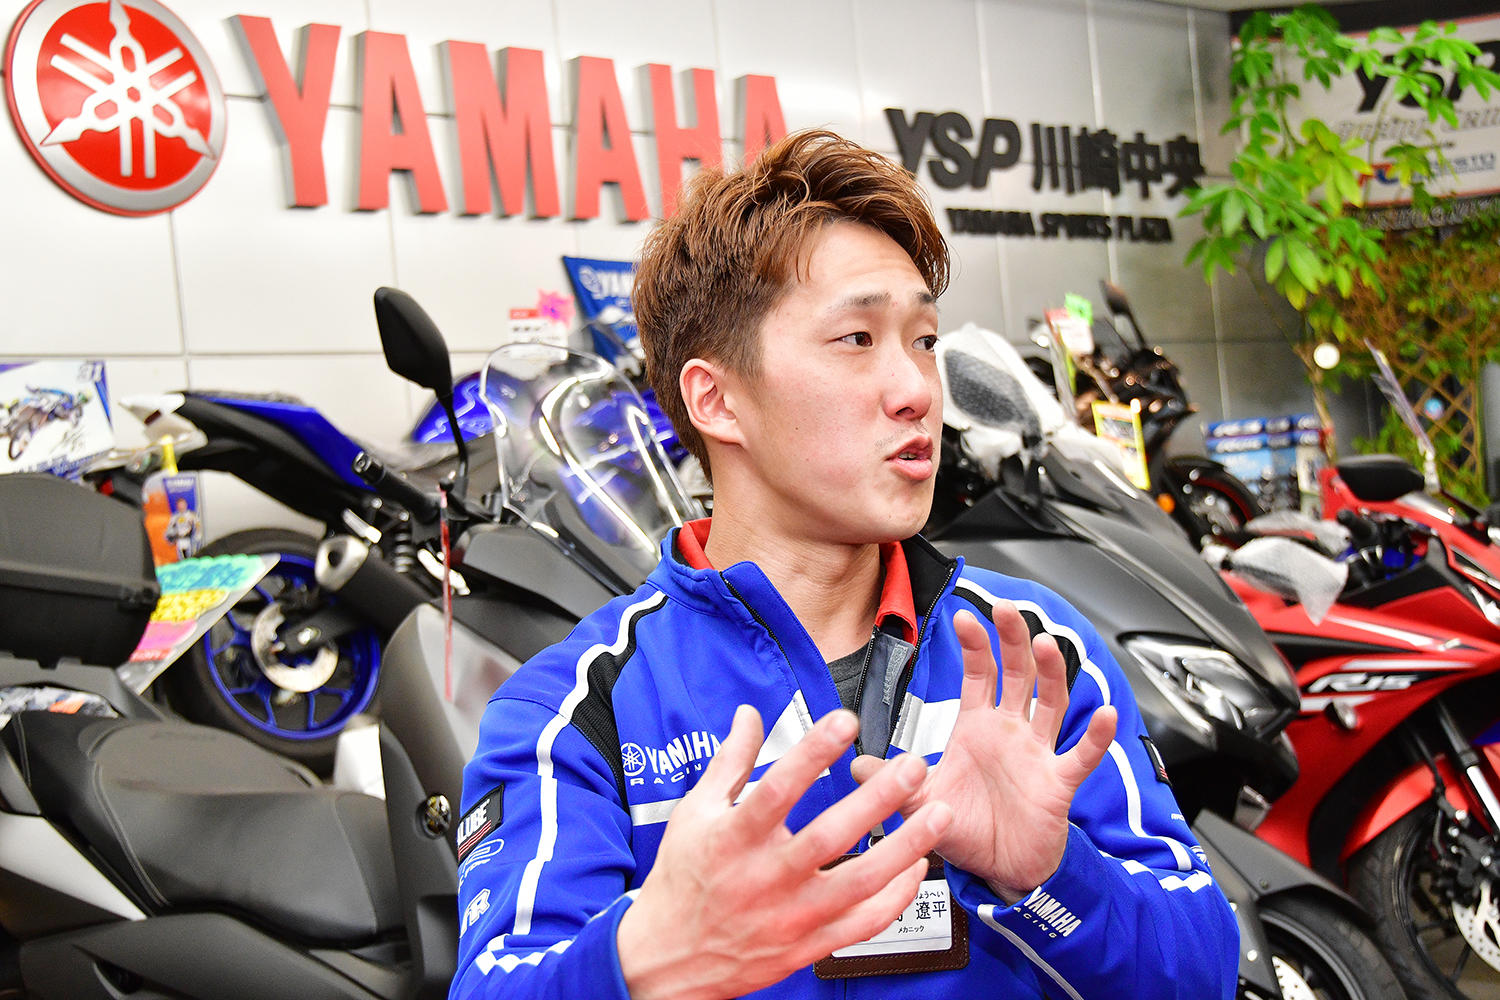 2016年WTGPスポーツバイク部門でチャンピオンを獲得したYSP川崎中央・鮫島遼平さんチャンピオンになる前と後とで、「何も変わらない」と言い切るあたり、さすがです！